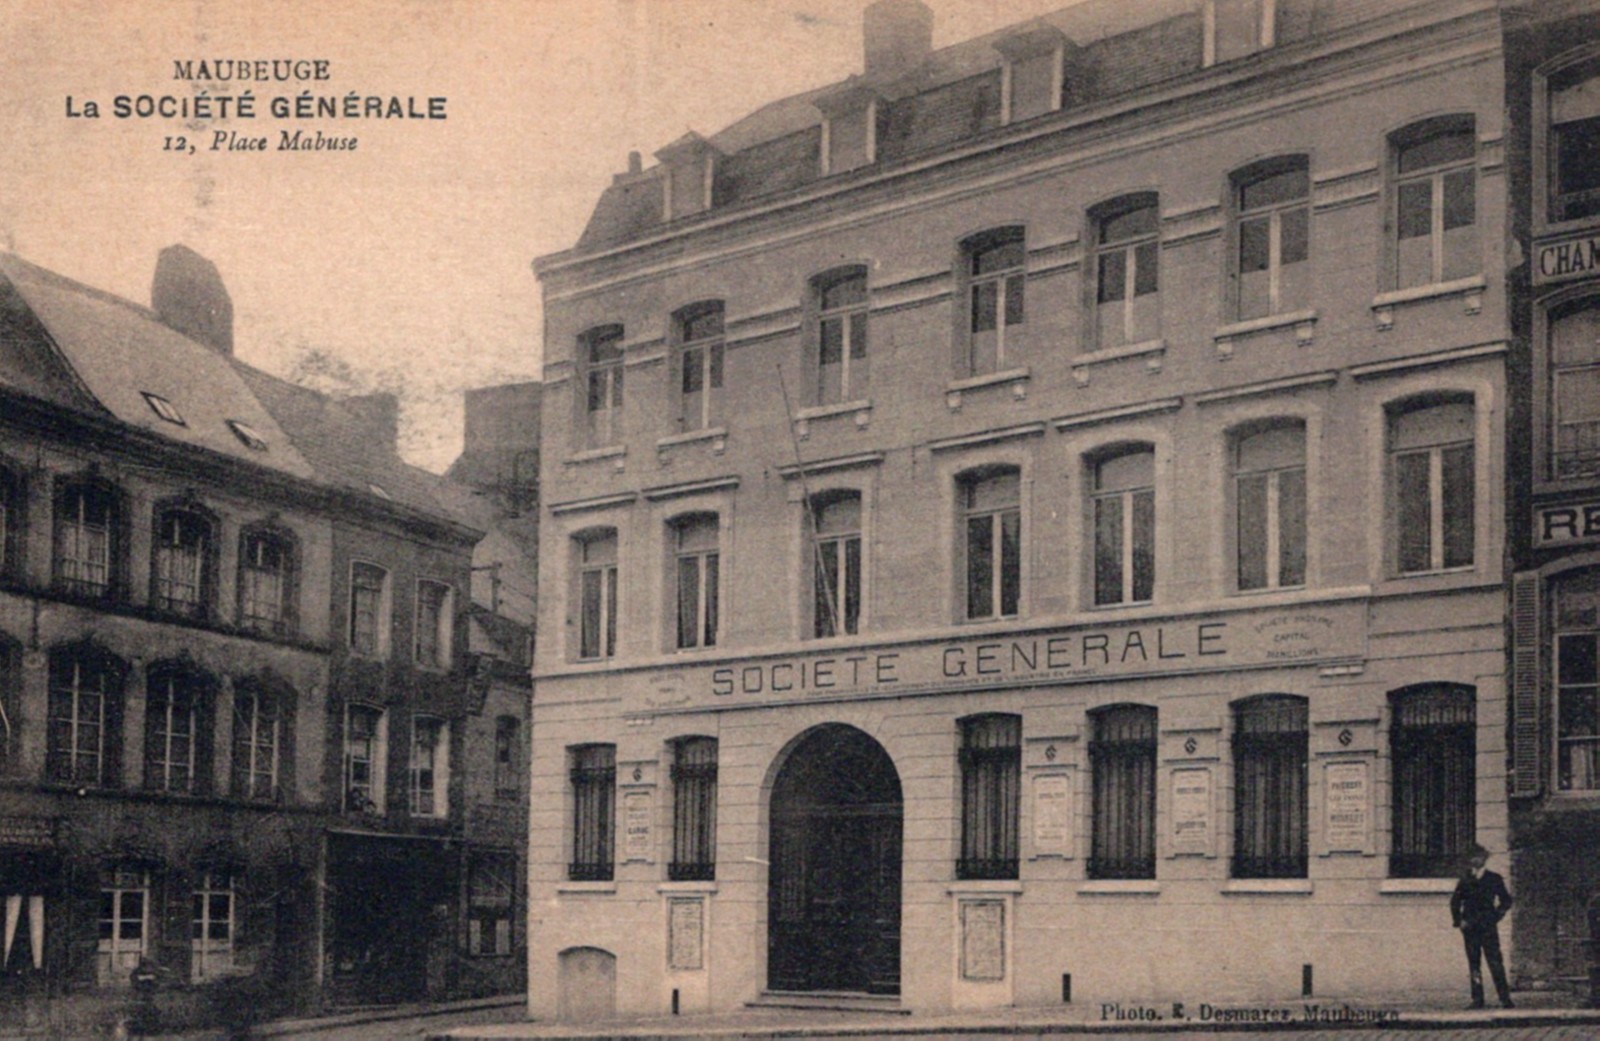 Maubeuge, Société Générale avant 1940